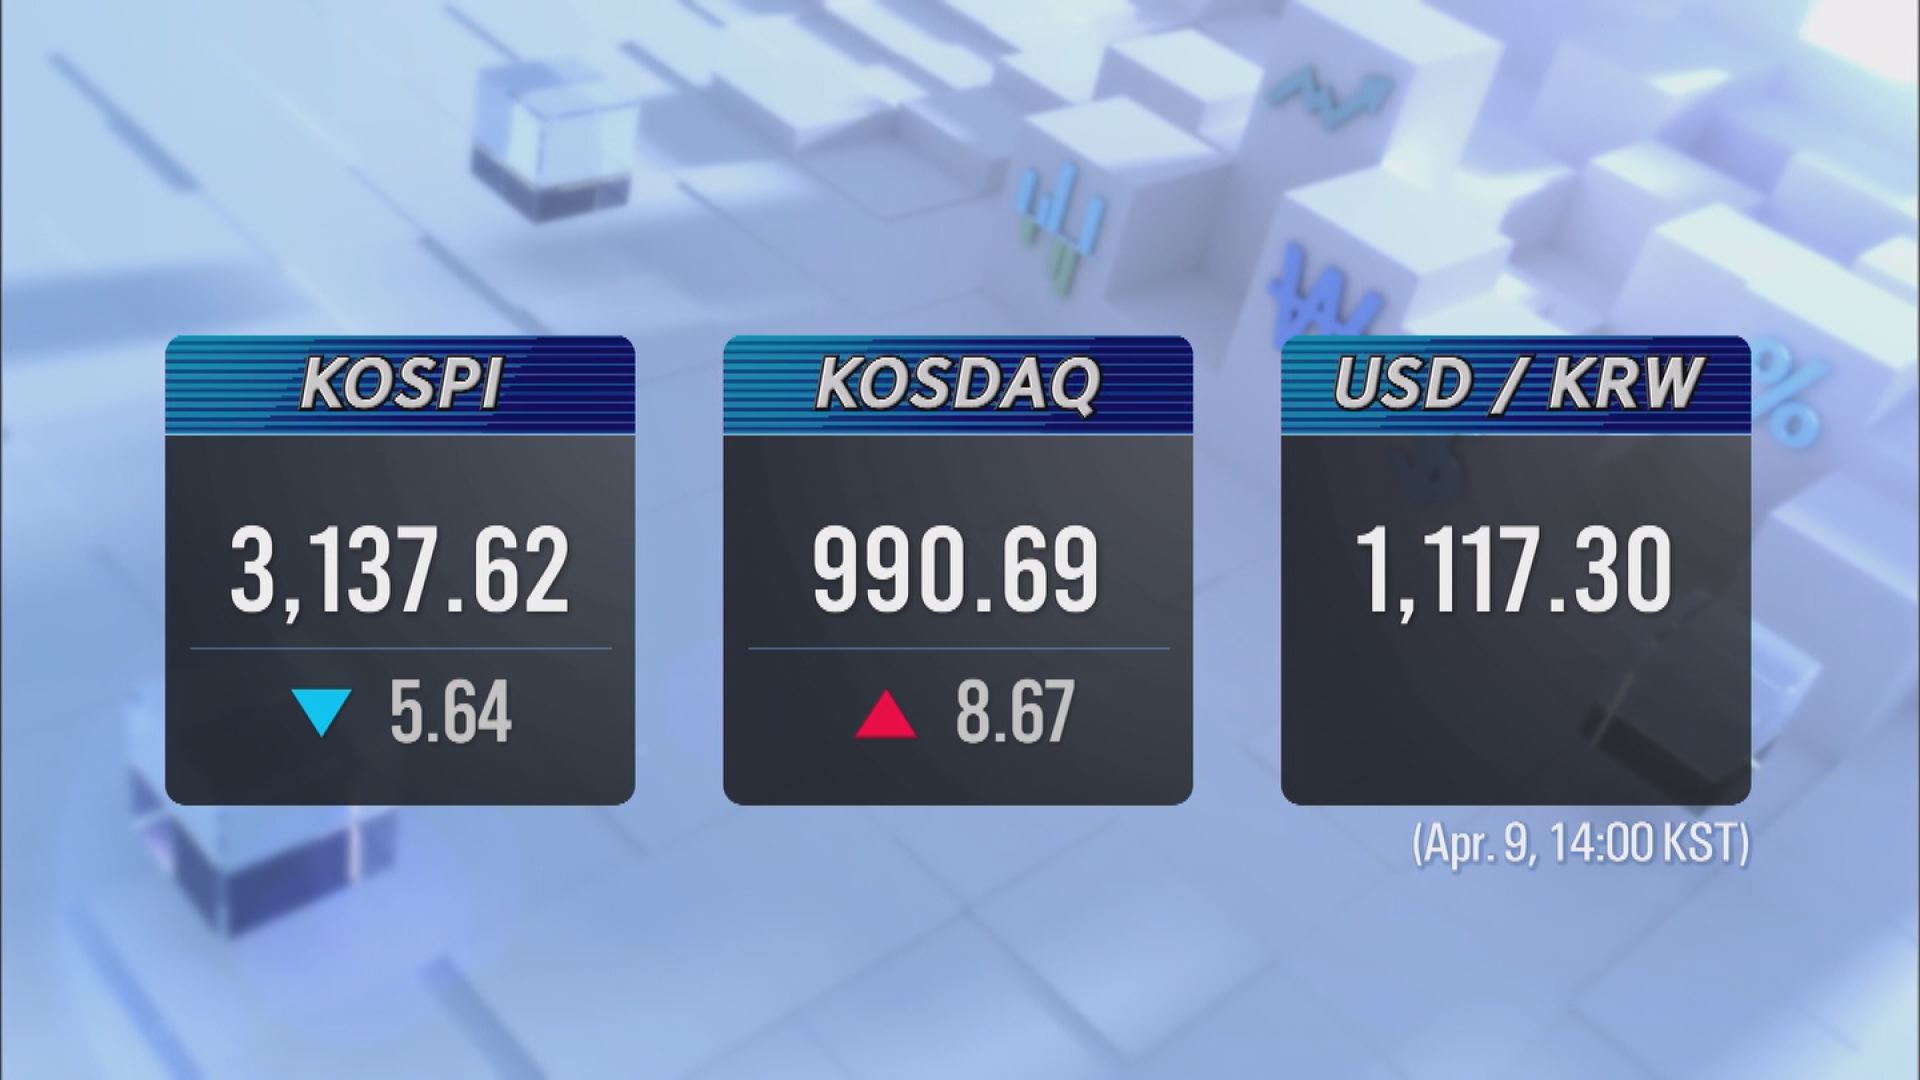 KOSPI 3,137.62 KOSDAQ 990.69